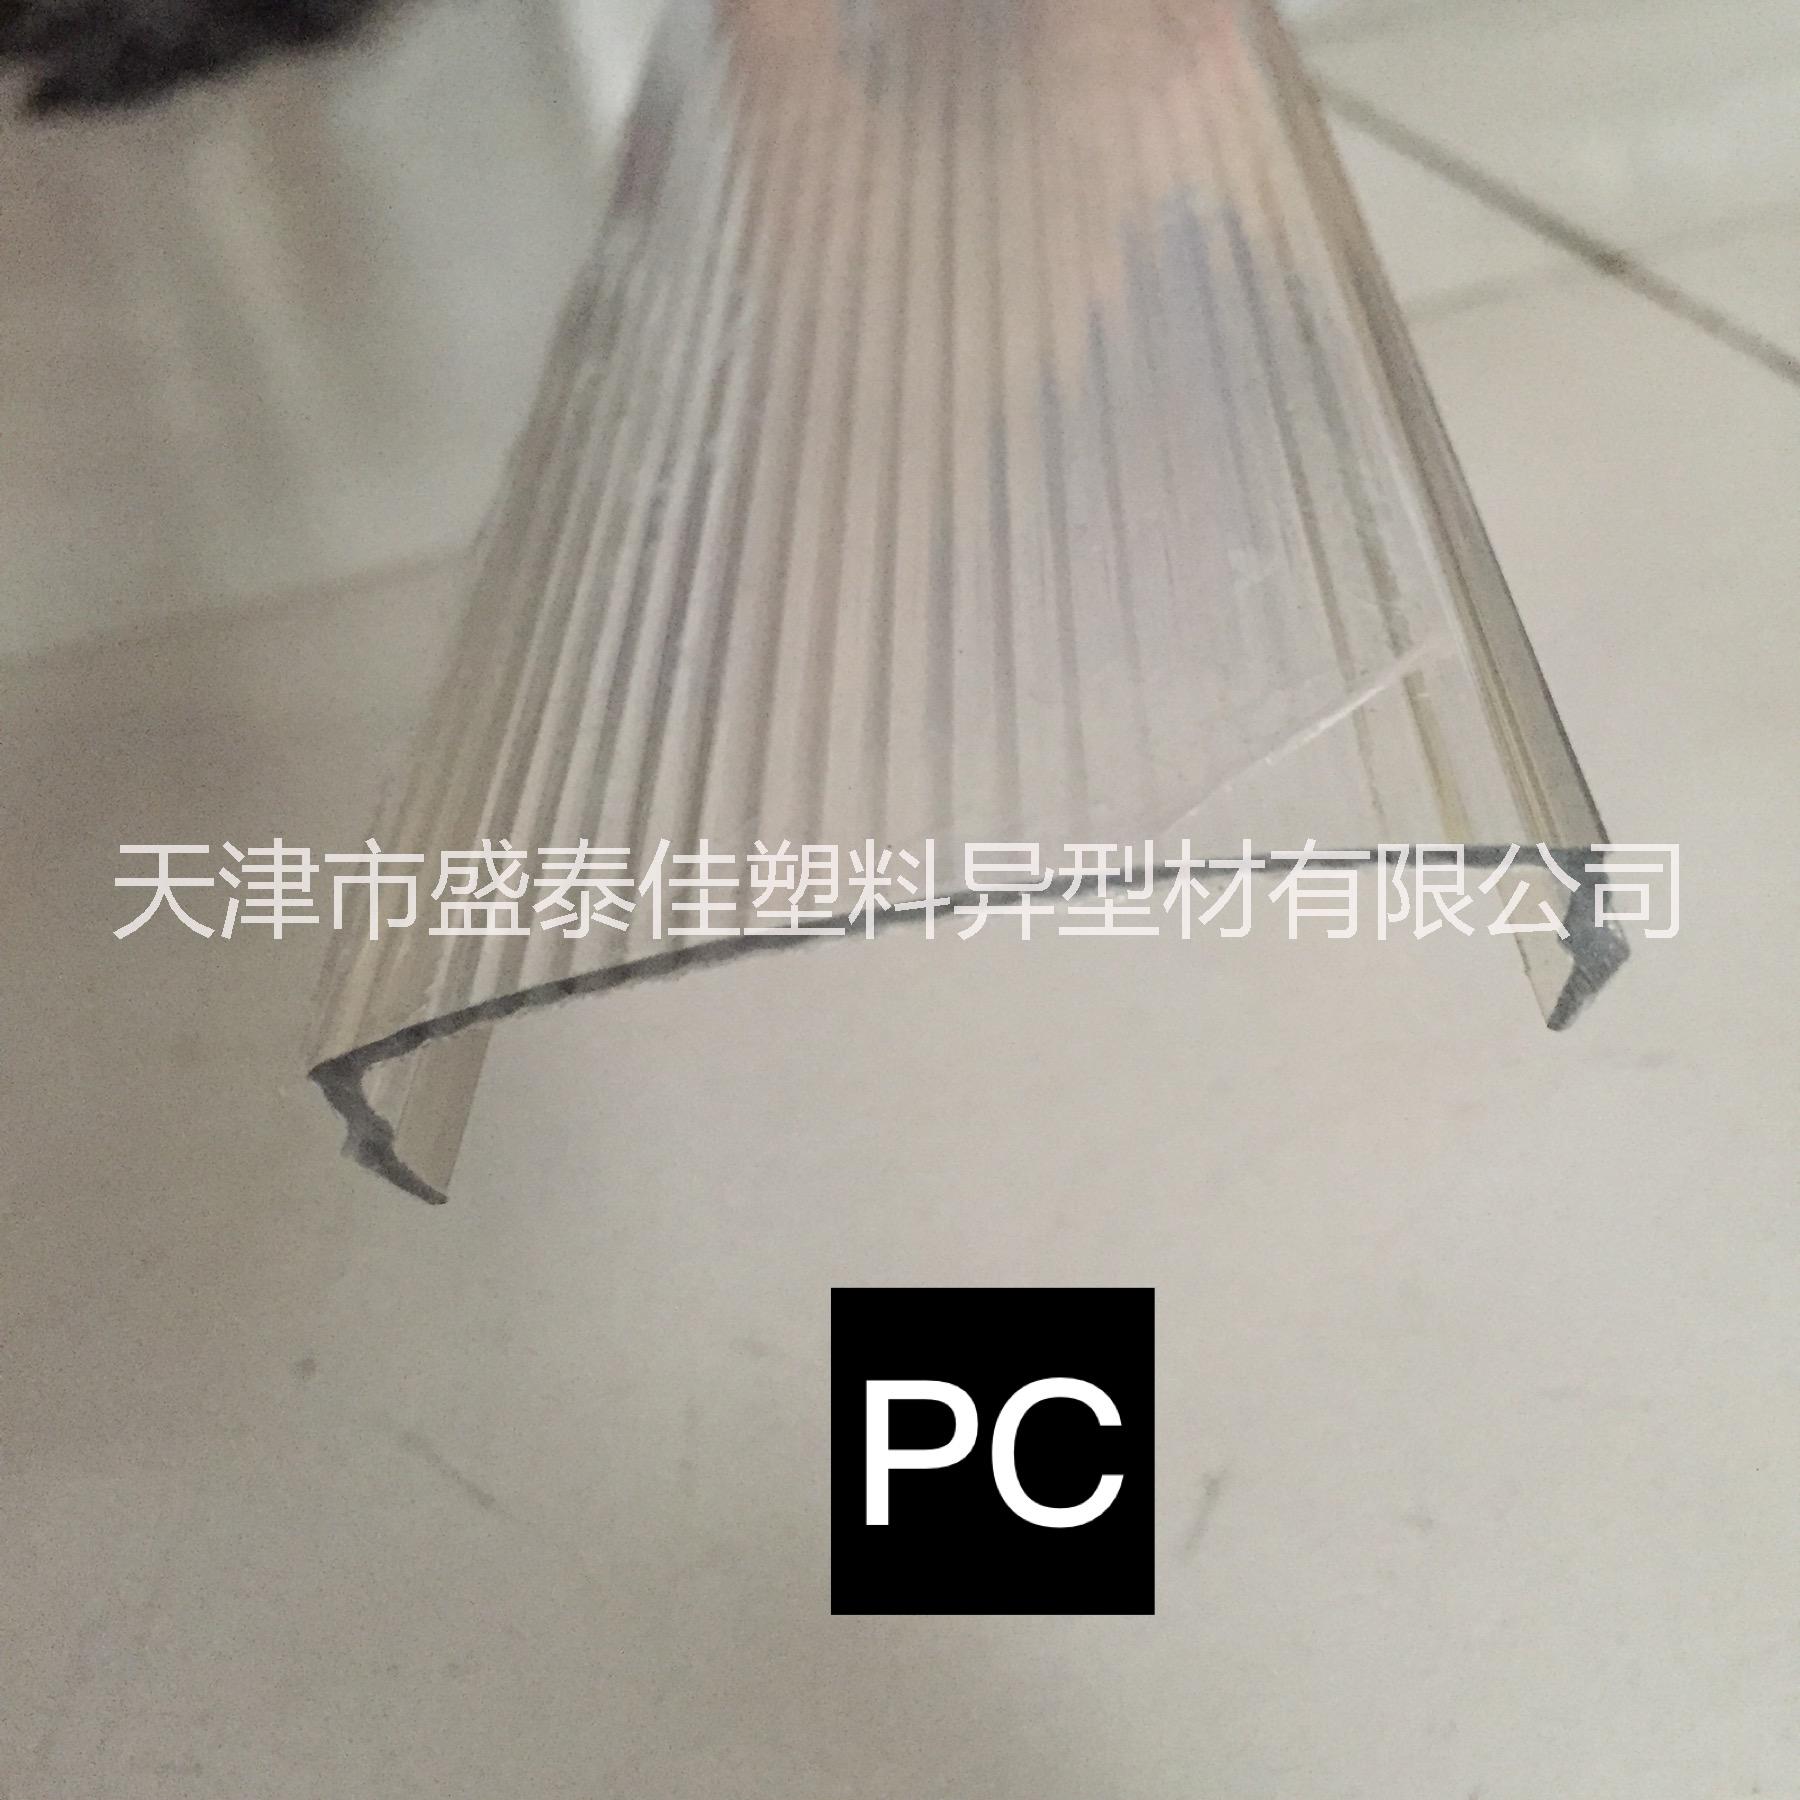 天津市塑料异型材厂家PC塑料异型材生产厂家批发报价价格